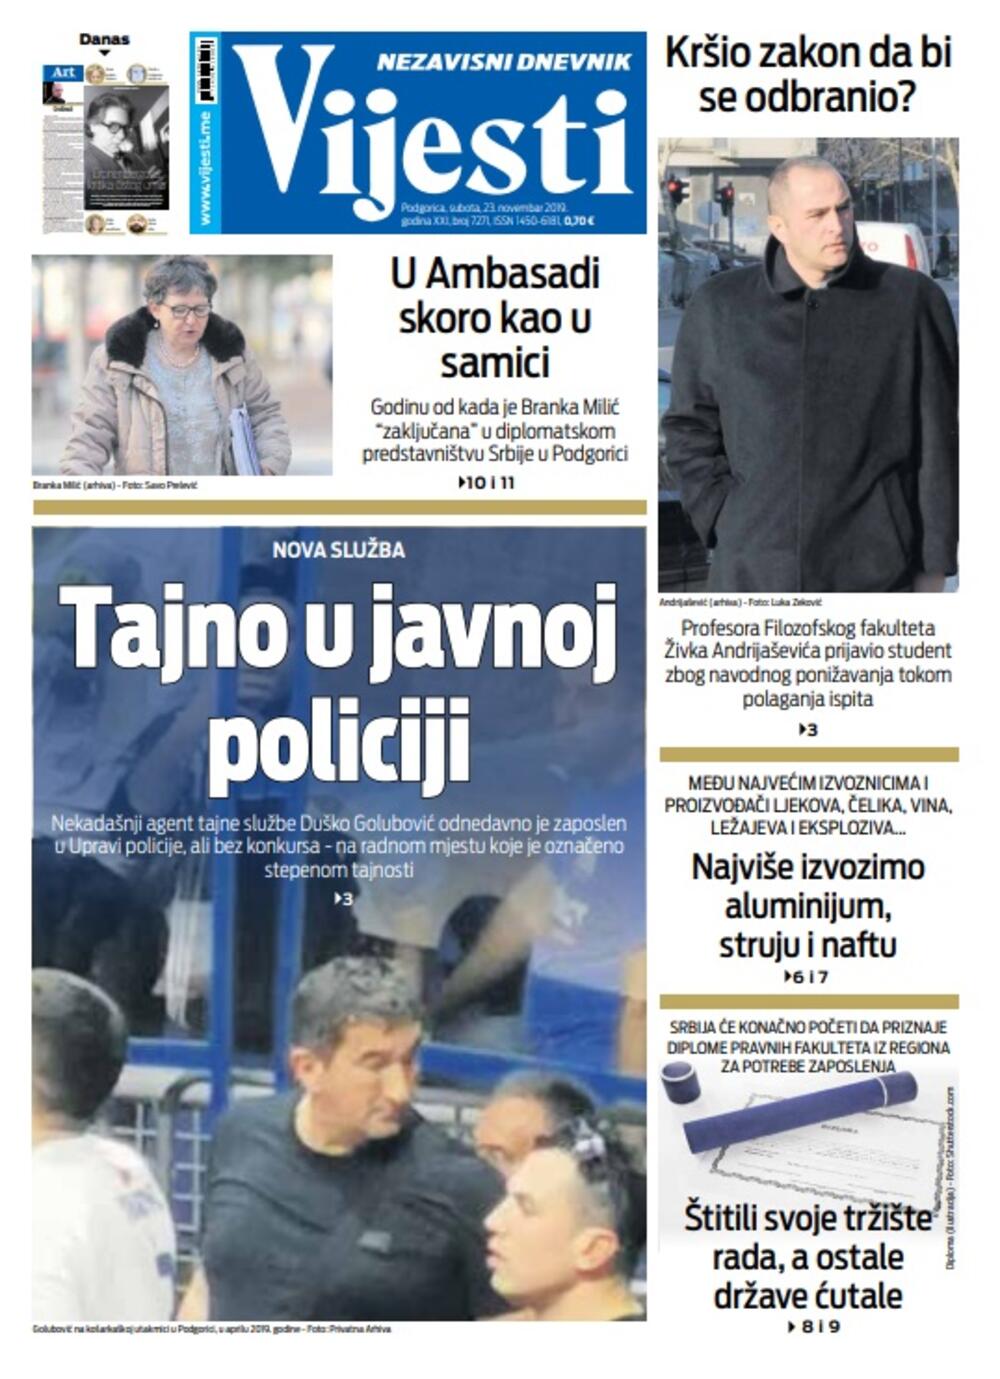 Naslovna strana "Vijesti" za 23. novembar, Foto: Vijesti